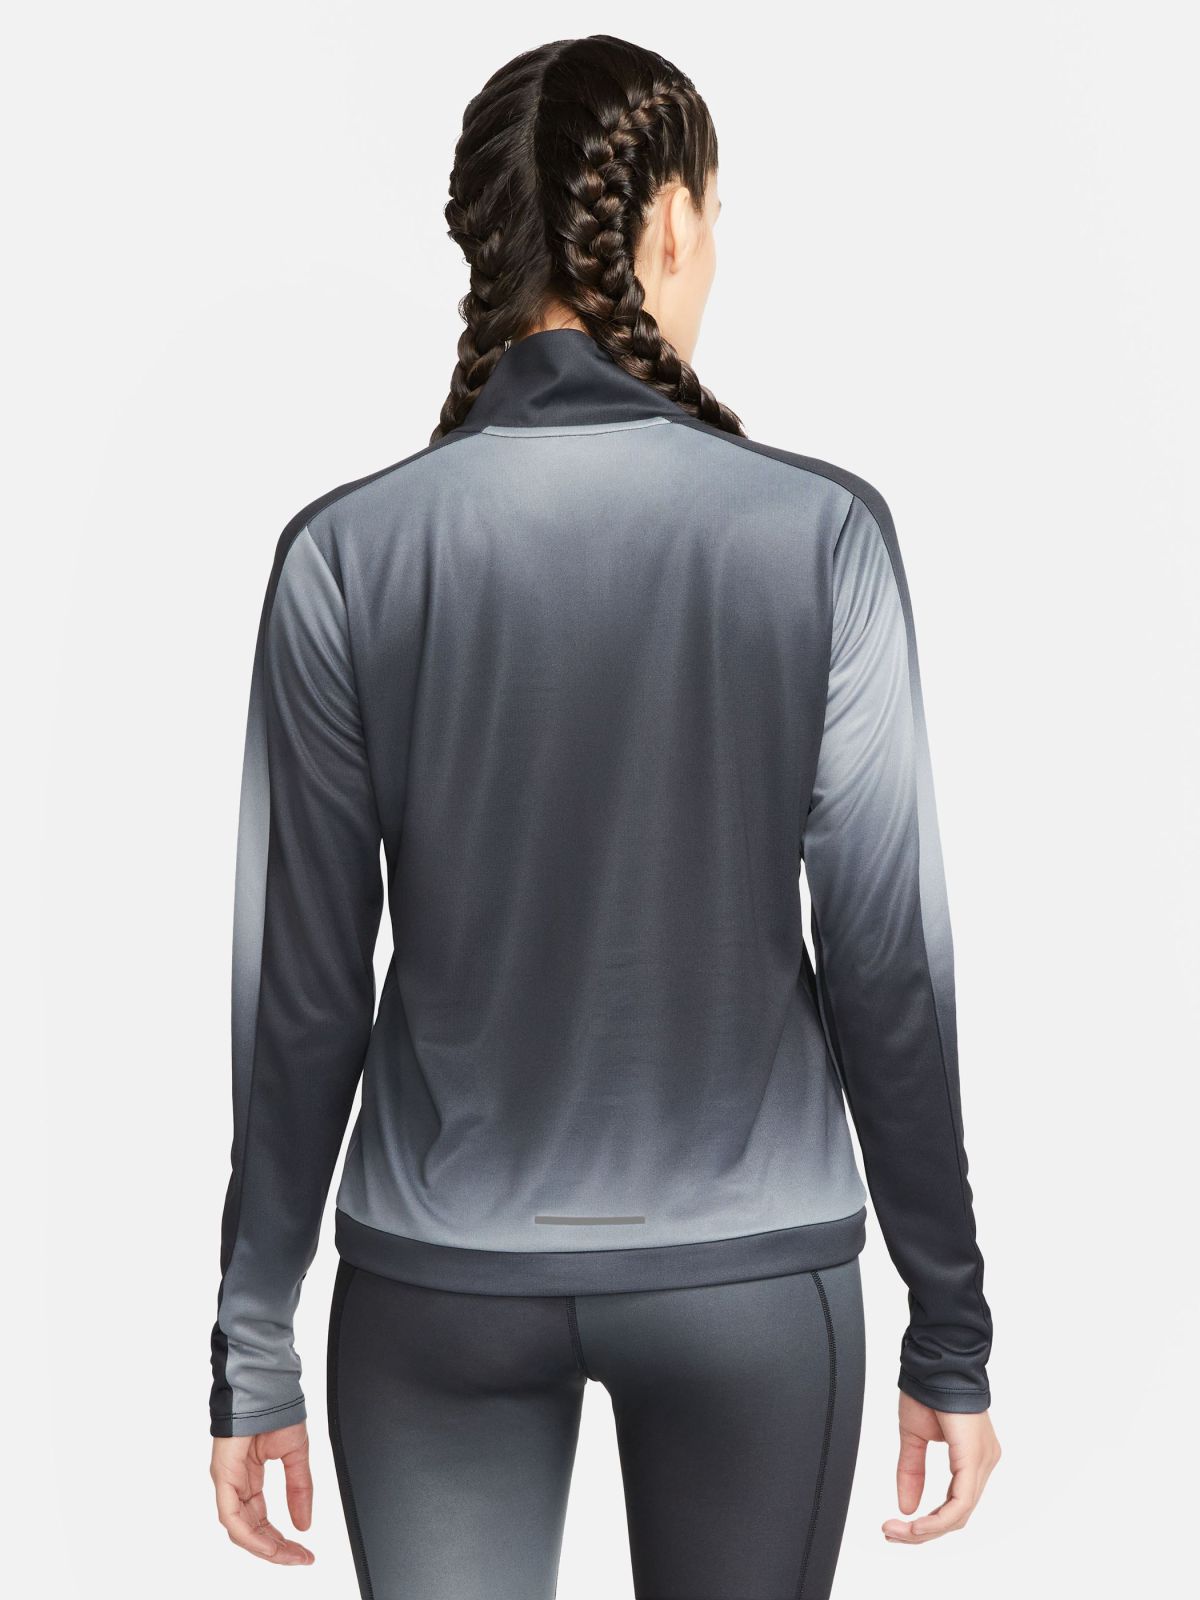  חולצת ריצה Nike Dri-FIT Swoosh של NIKE